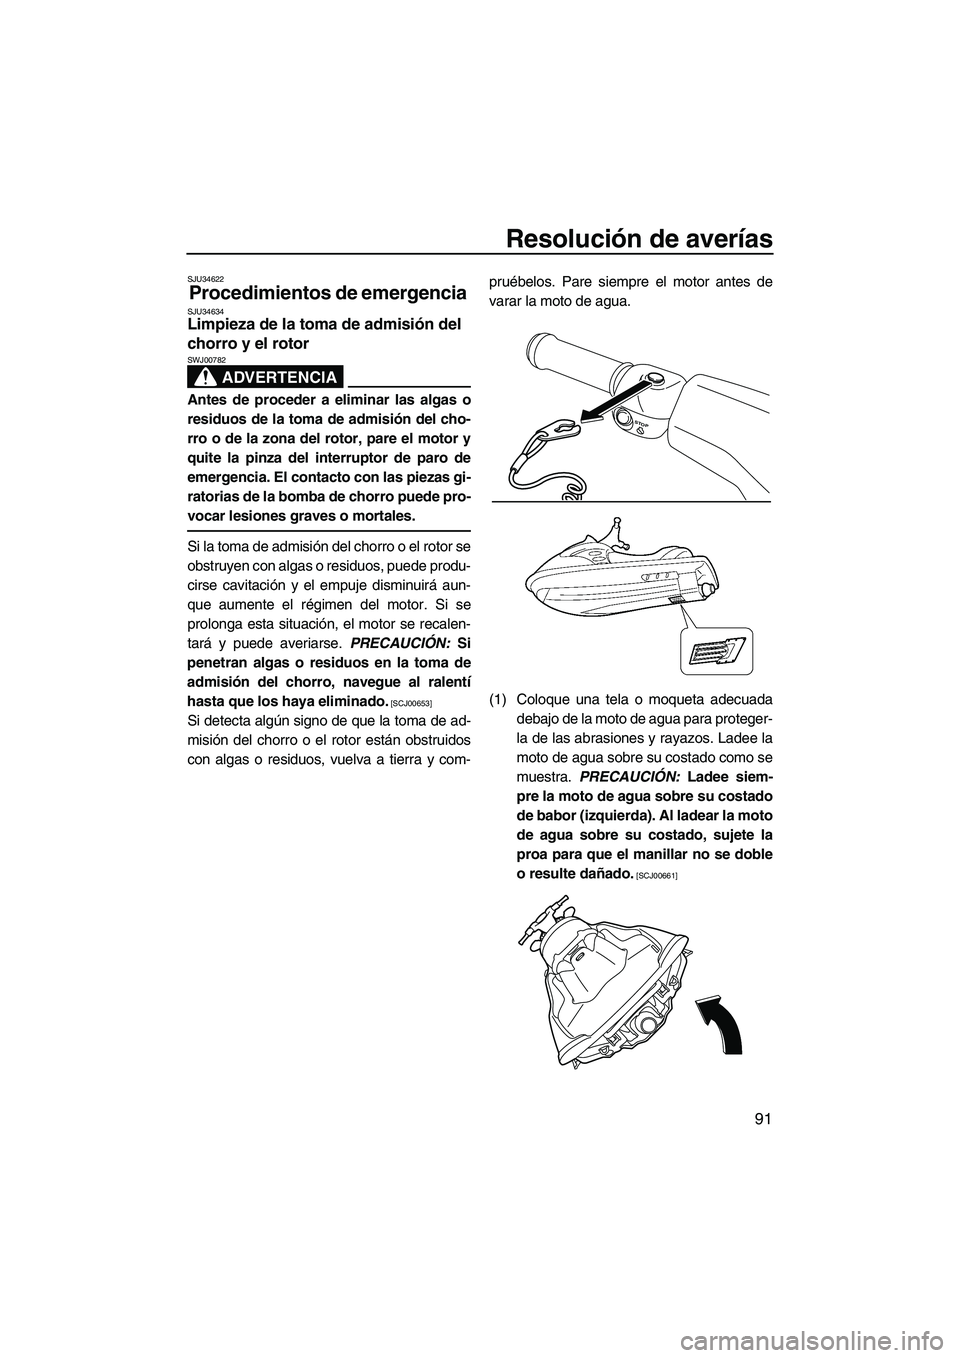 YAMAHA VX SPORT 2010  Manuale de Empleo (in Spanish) Resolución de averías
91
SJU34622
Procedimientos de emergencia SJU34634Limpieza de la toma de admisión del 
chorro y el rotor 
ADVERTENCIA
SWJ00782
Antes de proceder a eliminar las algas o
residuos